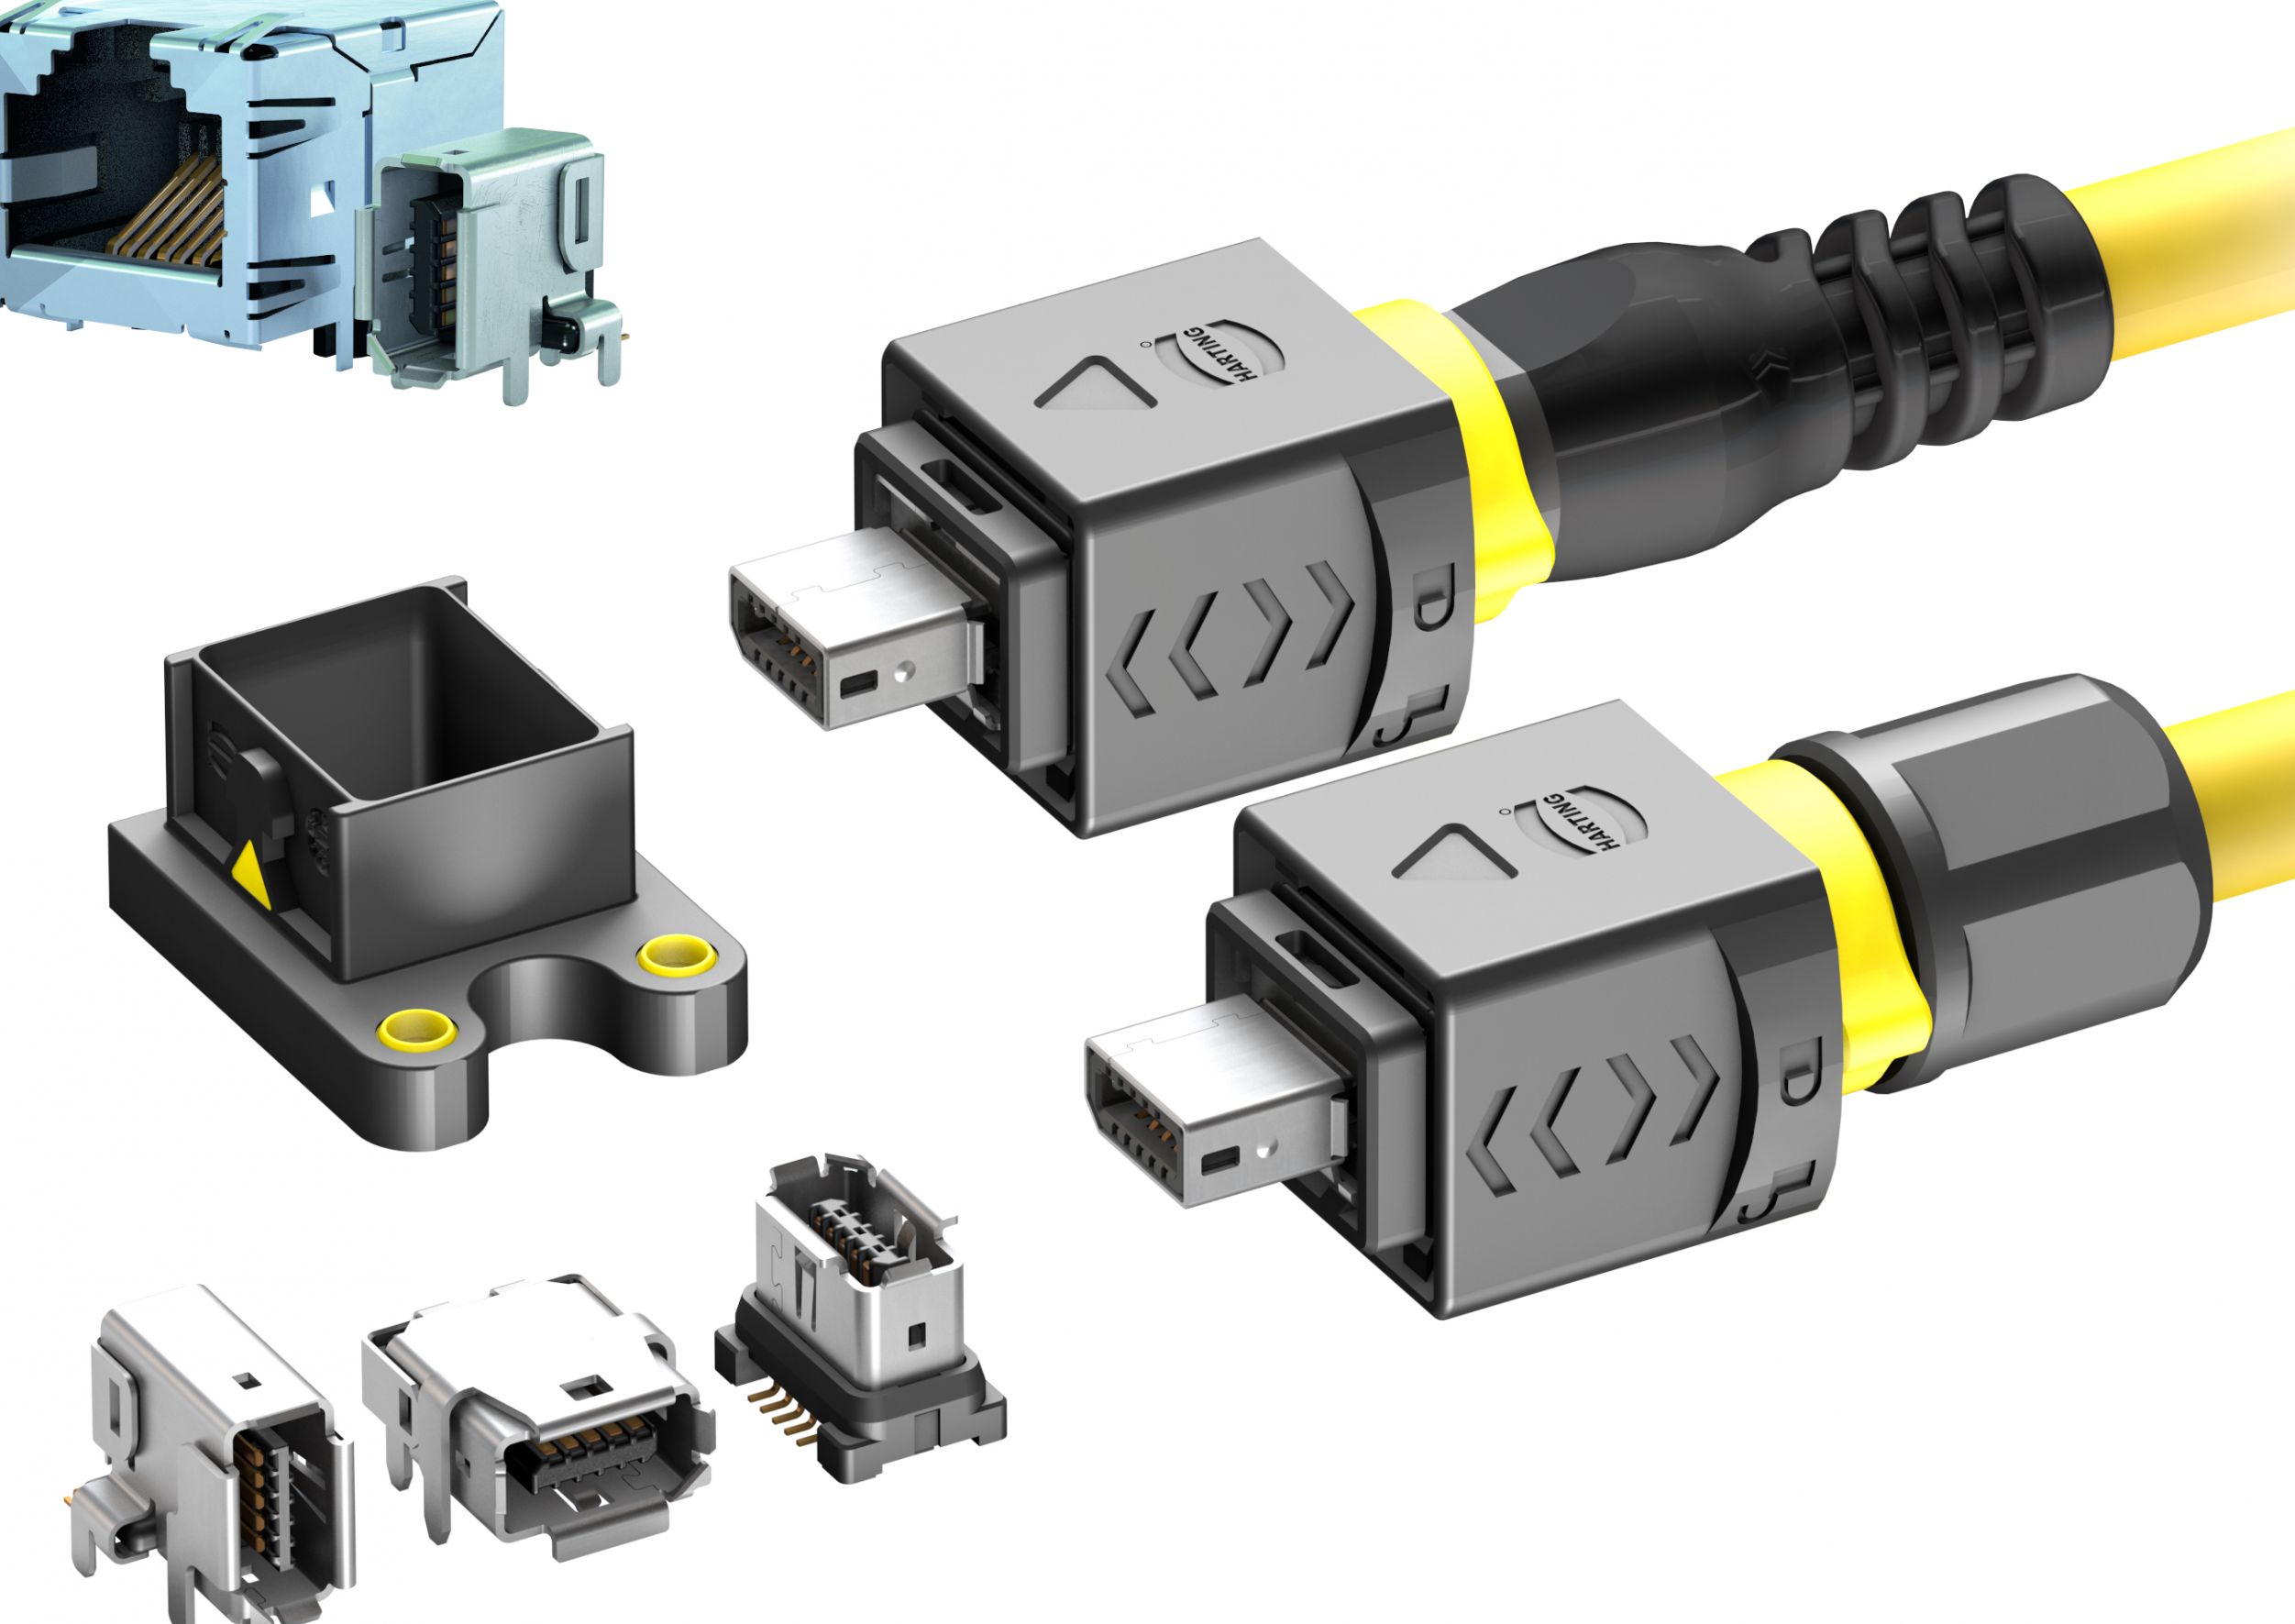 Cabling - CABLING Câble Y USB pour disque dur externe Double USB Type A /  Mini USB 5 pins Type B 1m - Câble USB - Rue du Commerce